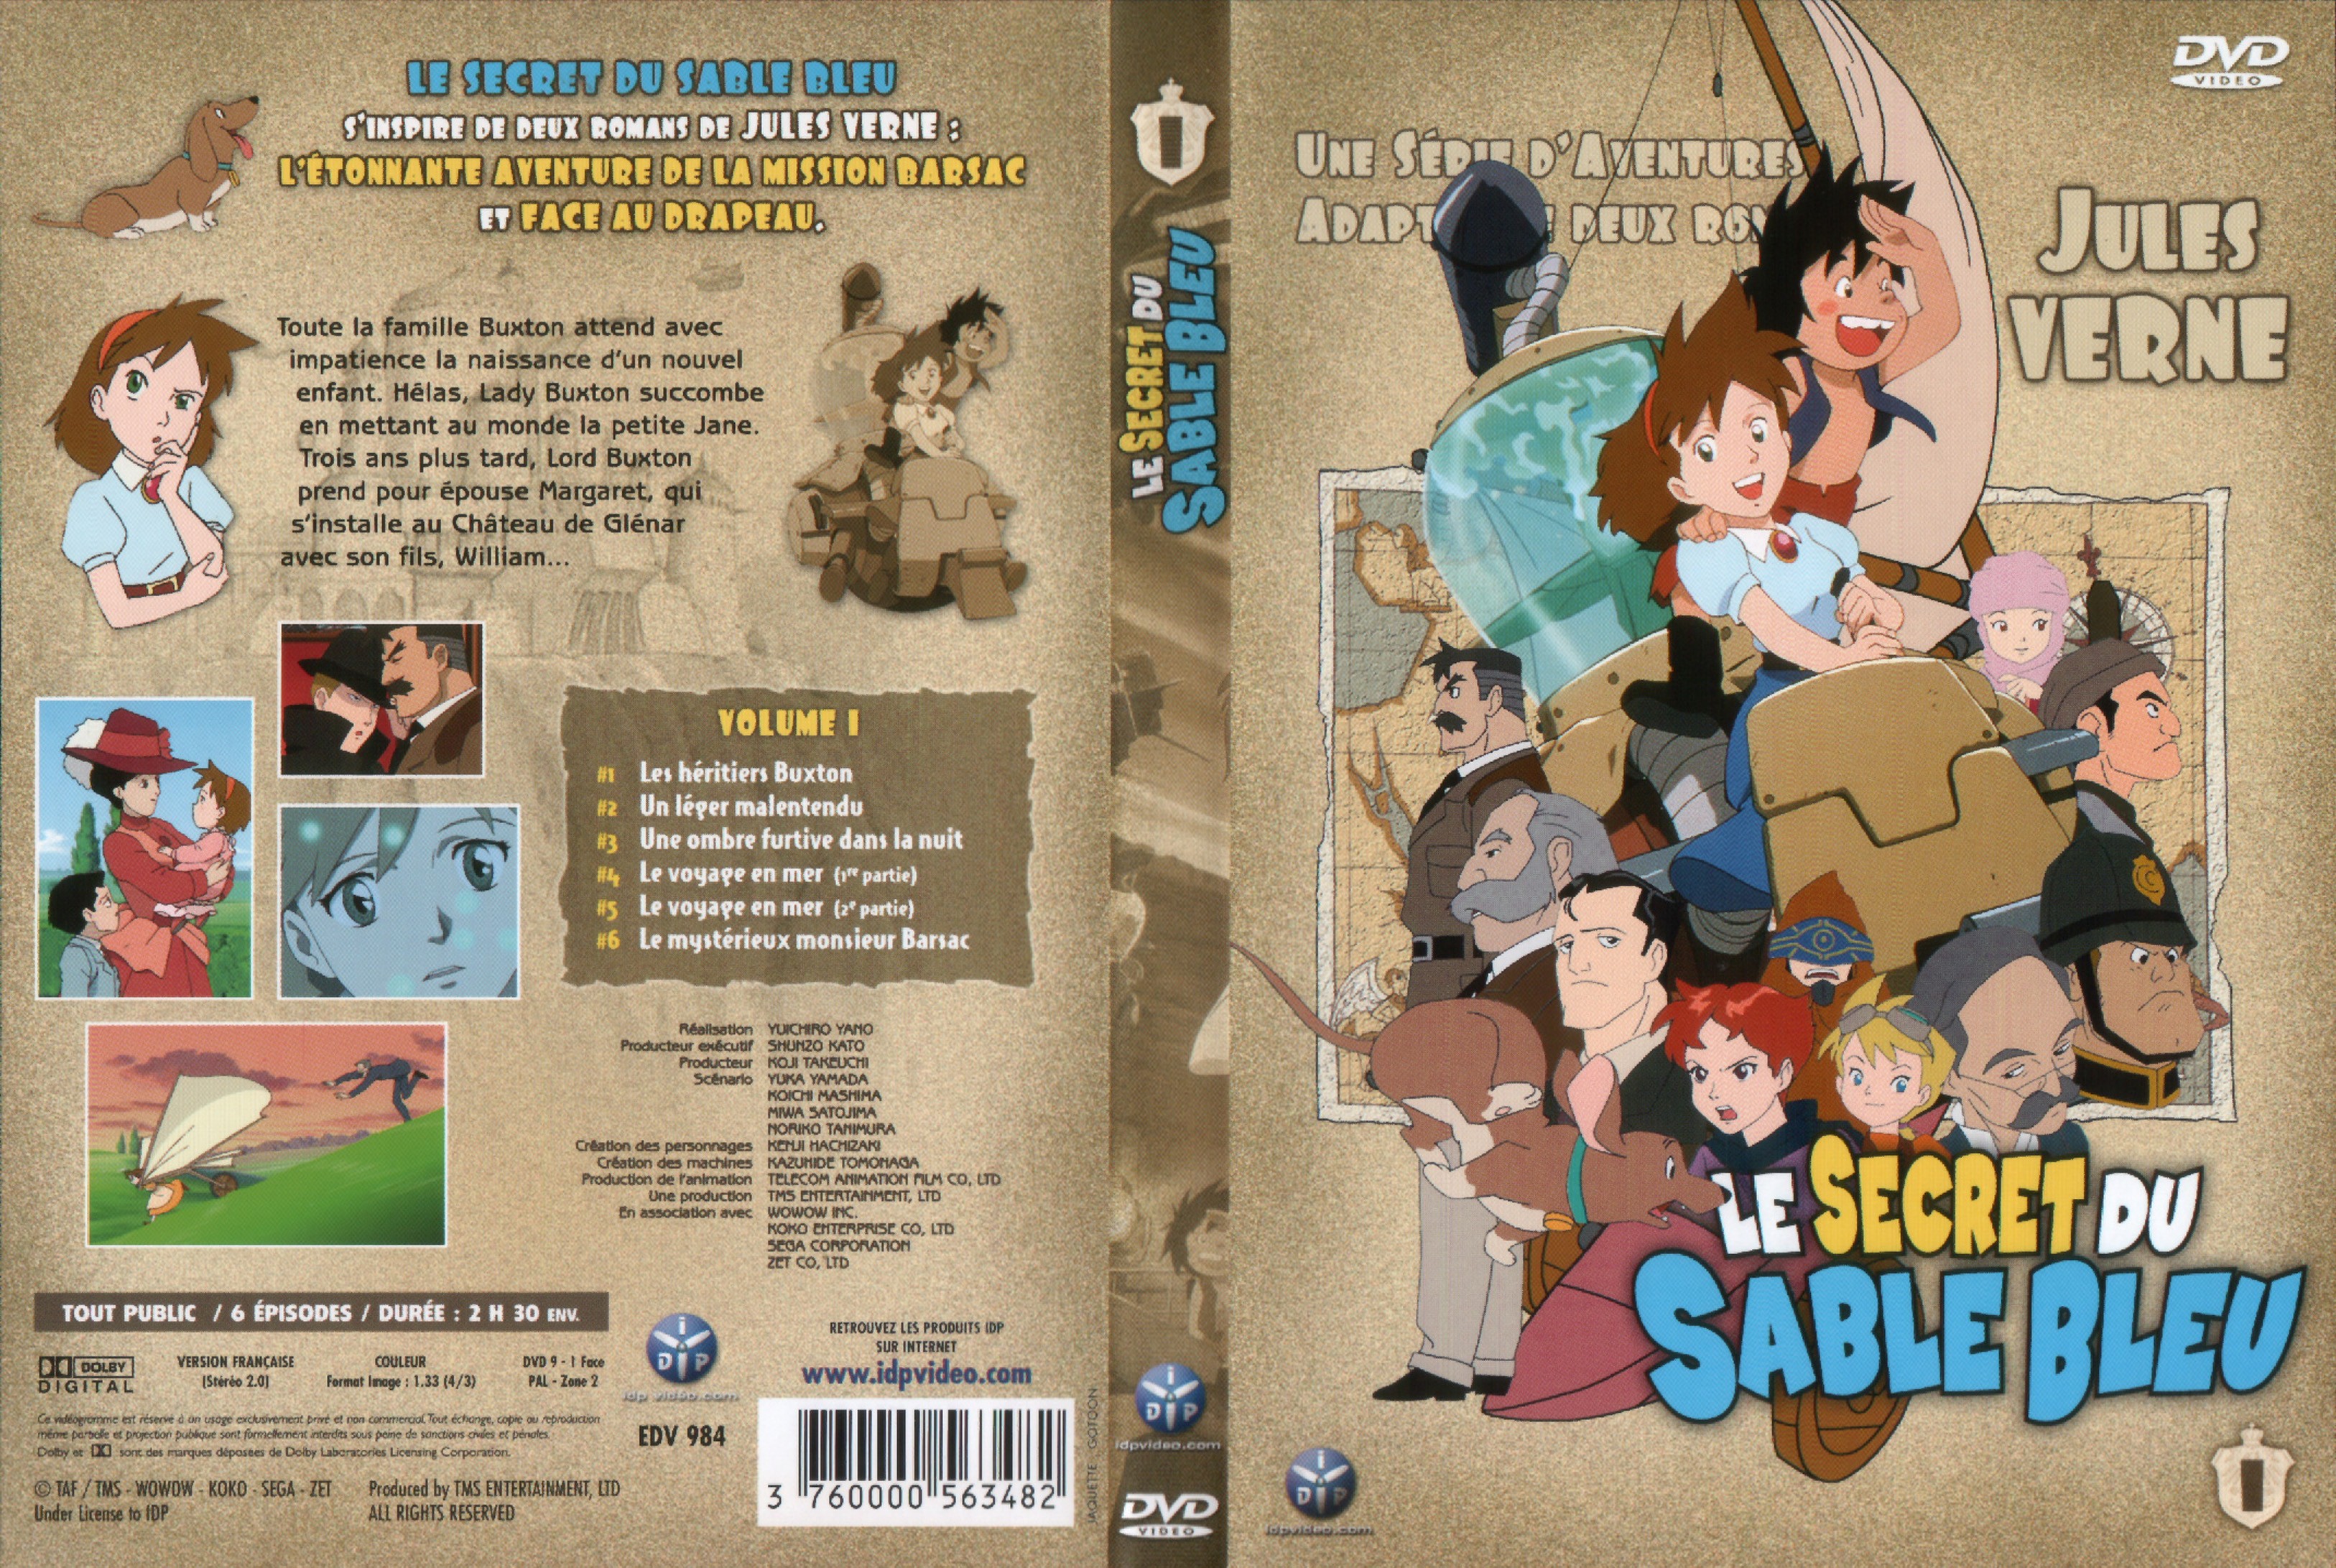 Jaquette DVD Le secret du sable bleu vol 1